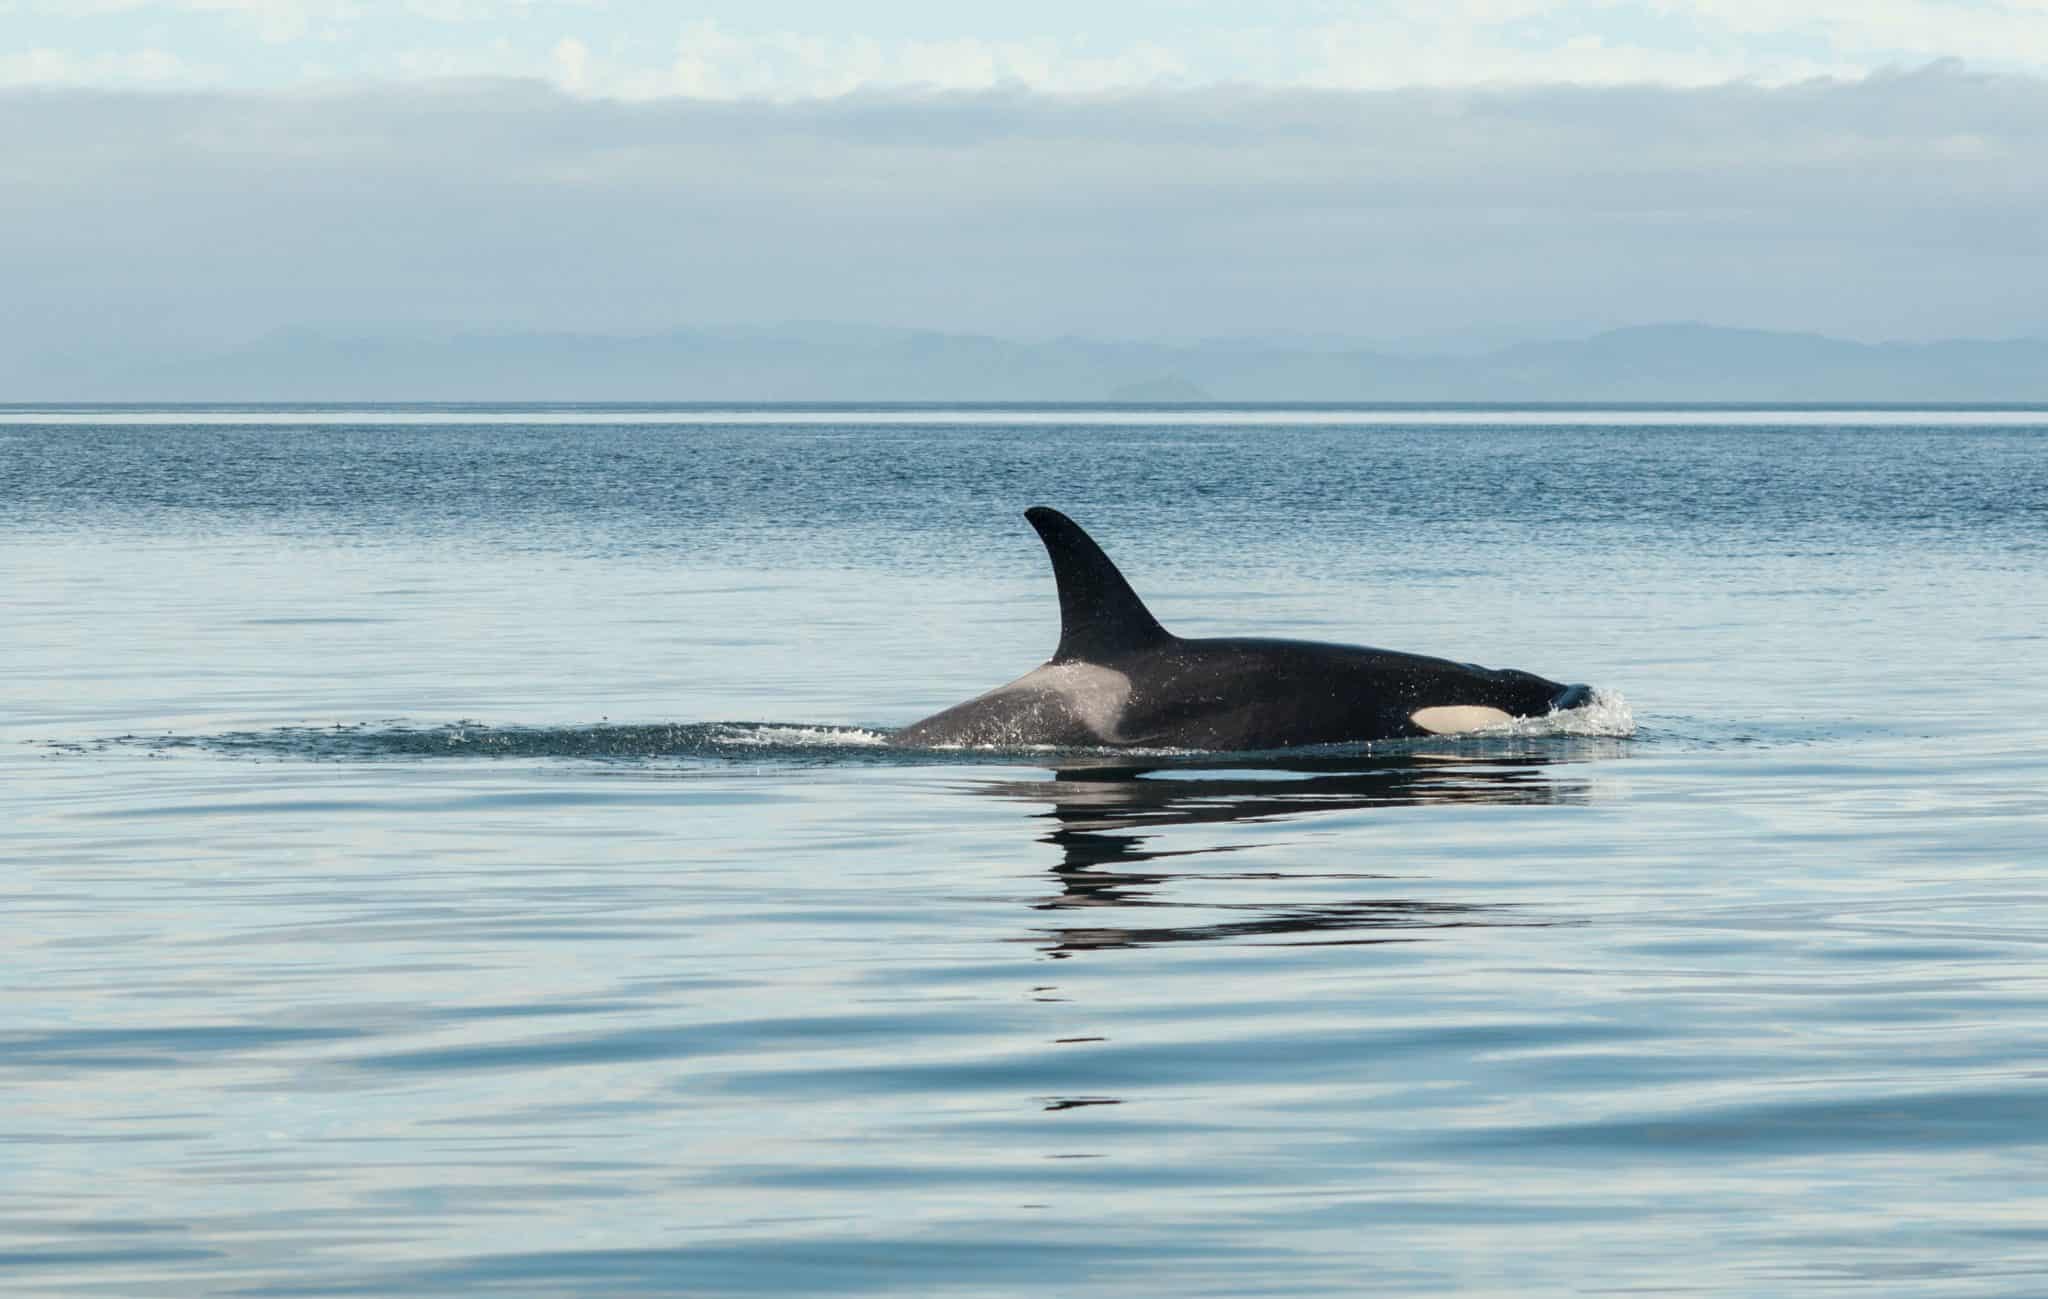 Stranded Killer Whale Saved After Long Rescue Effort